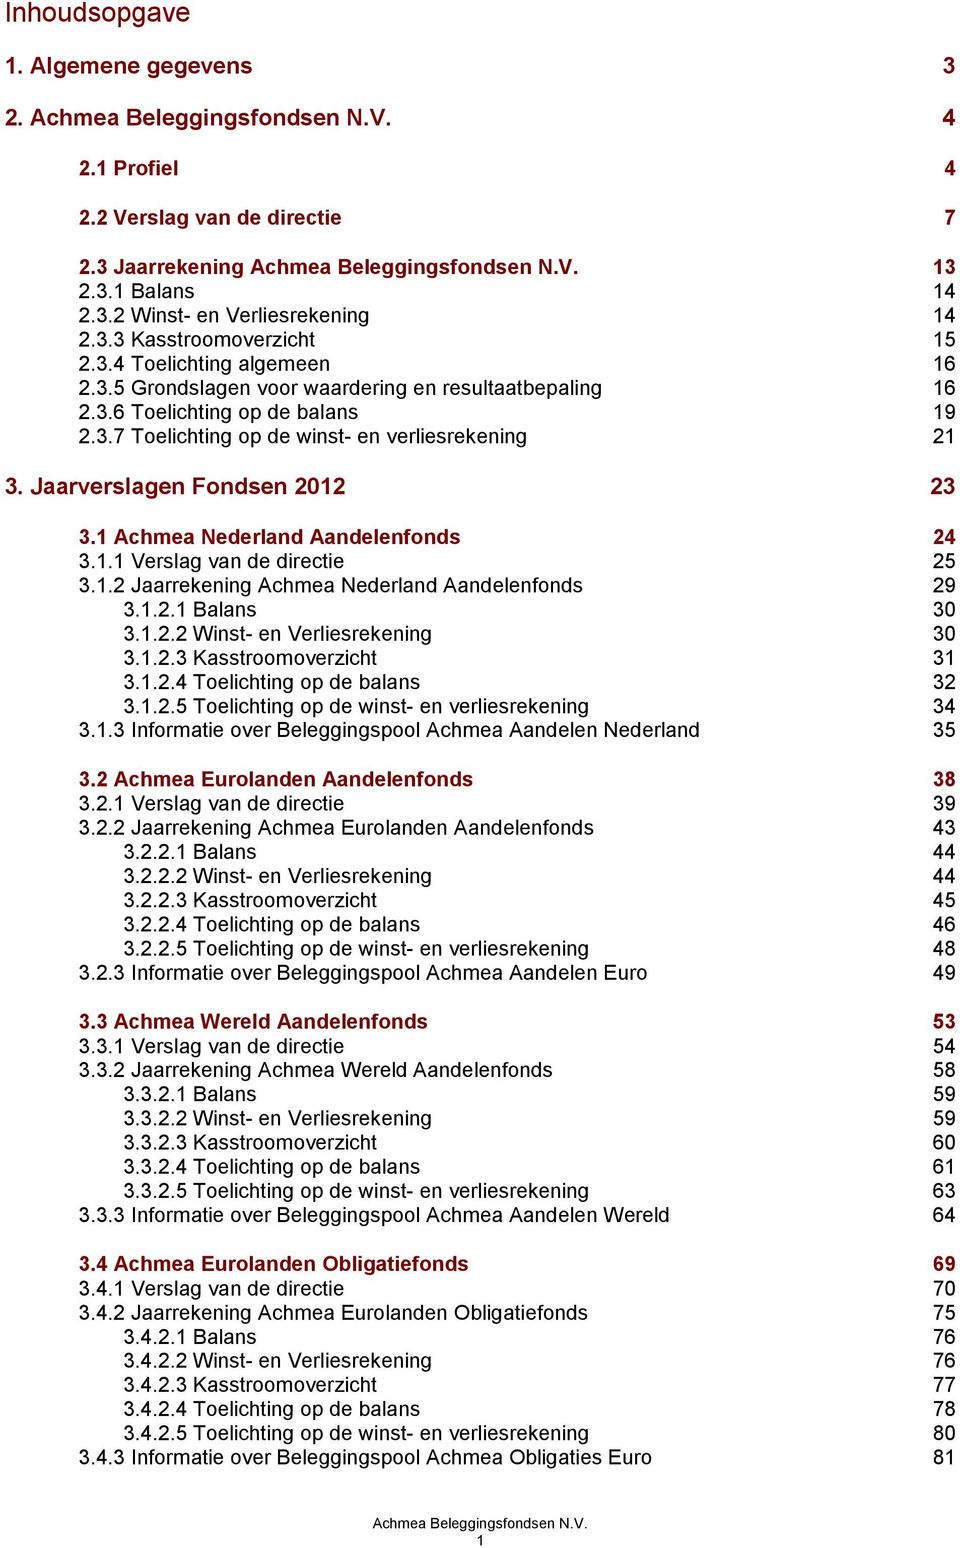 Jaarverslagen Fondsen 2012 23 3.1 Achmea Nederland Aandelenfonds 24 3.1.1 Verslag van de directie 25 3.1.2 Jaarrekening Achmea Nederland Aandelenfonds 29 3.1.2.1 Balans 30 3.1.2.2 Winst- en Verliesrekening 30 3.